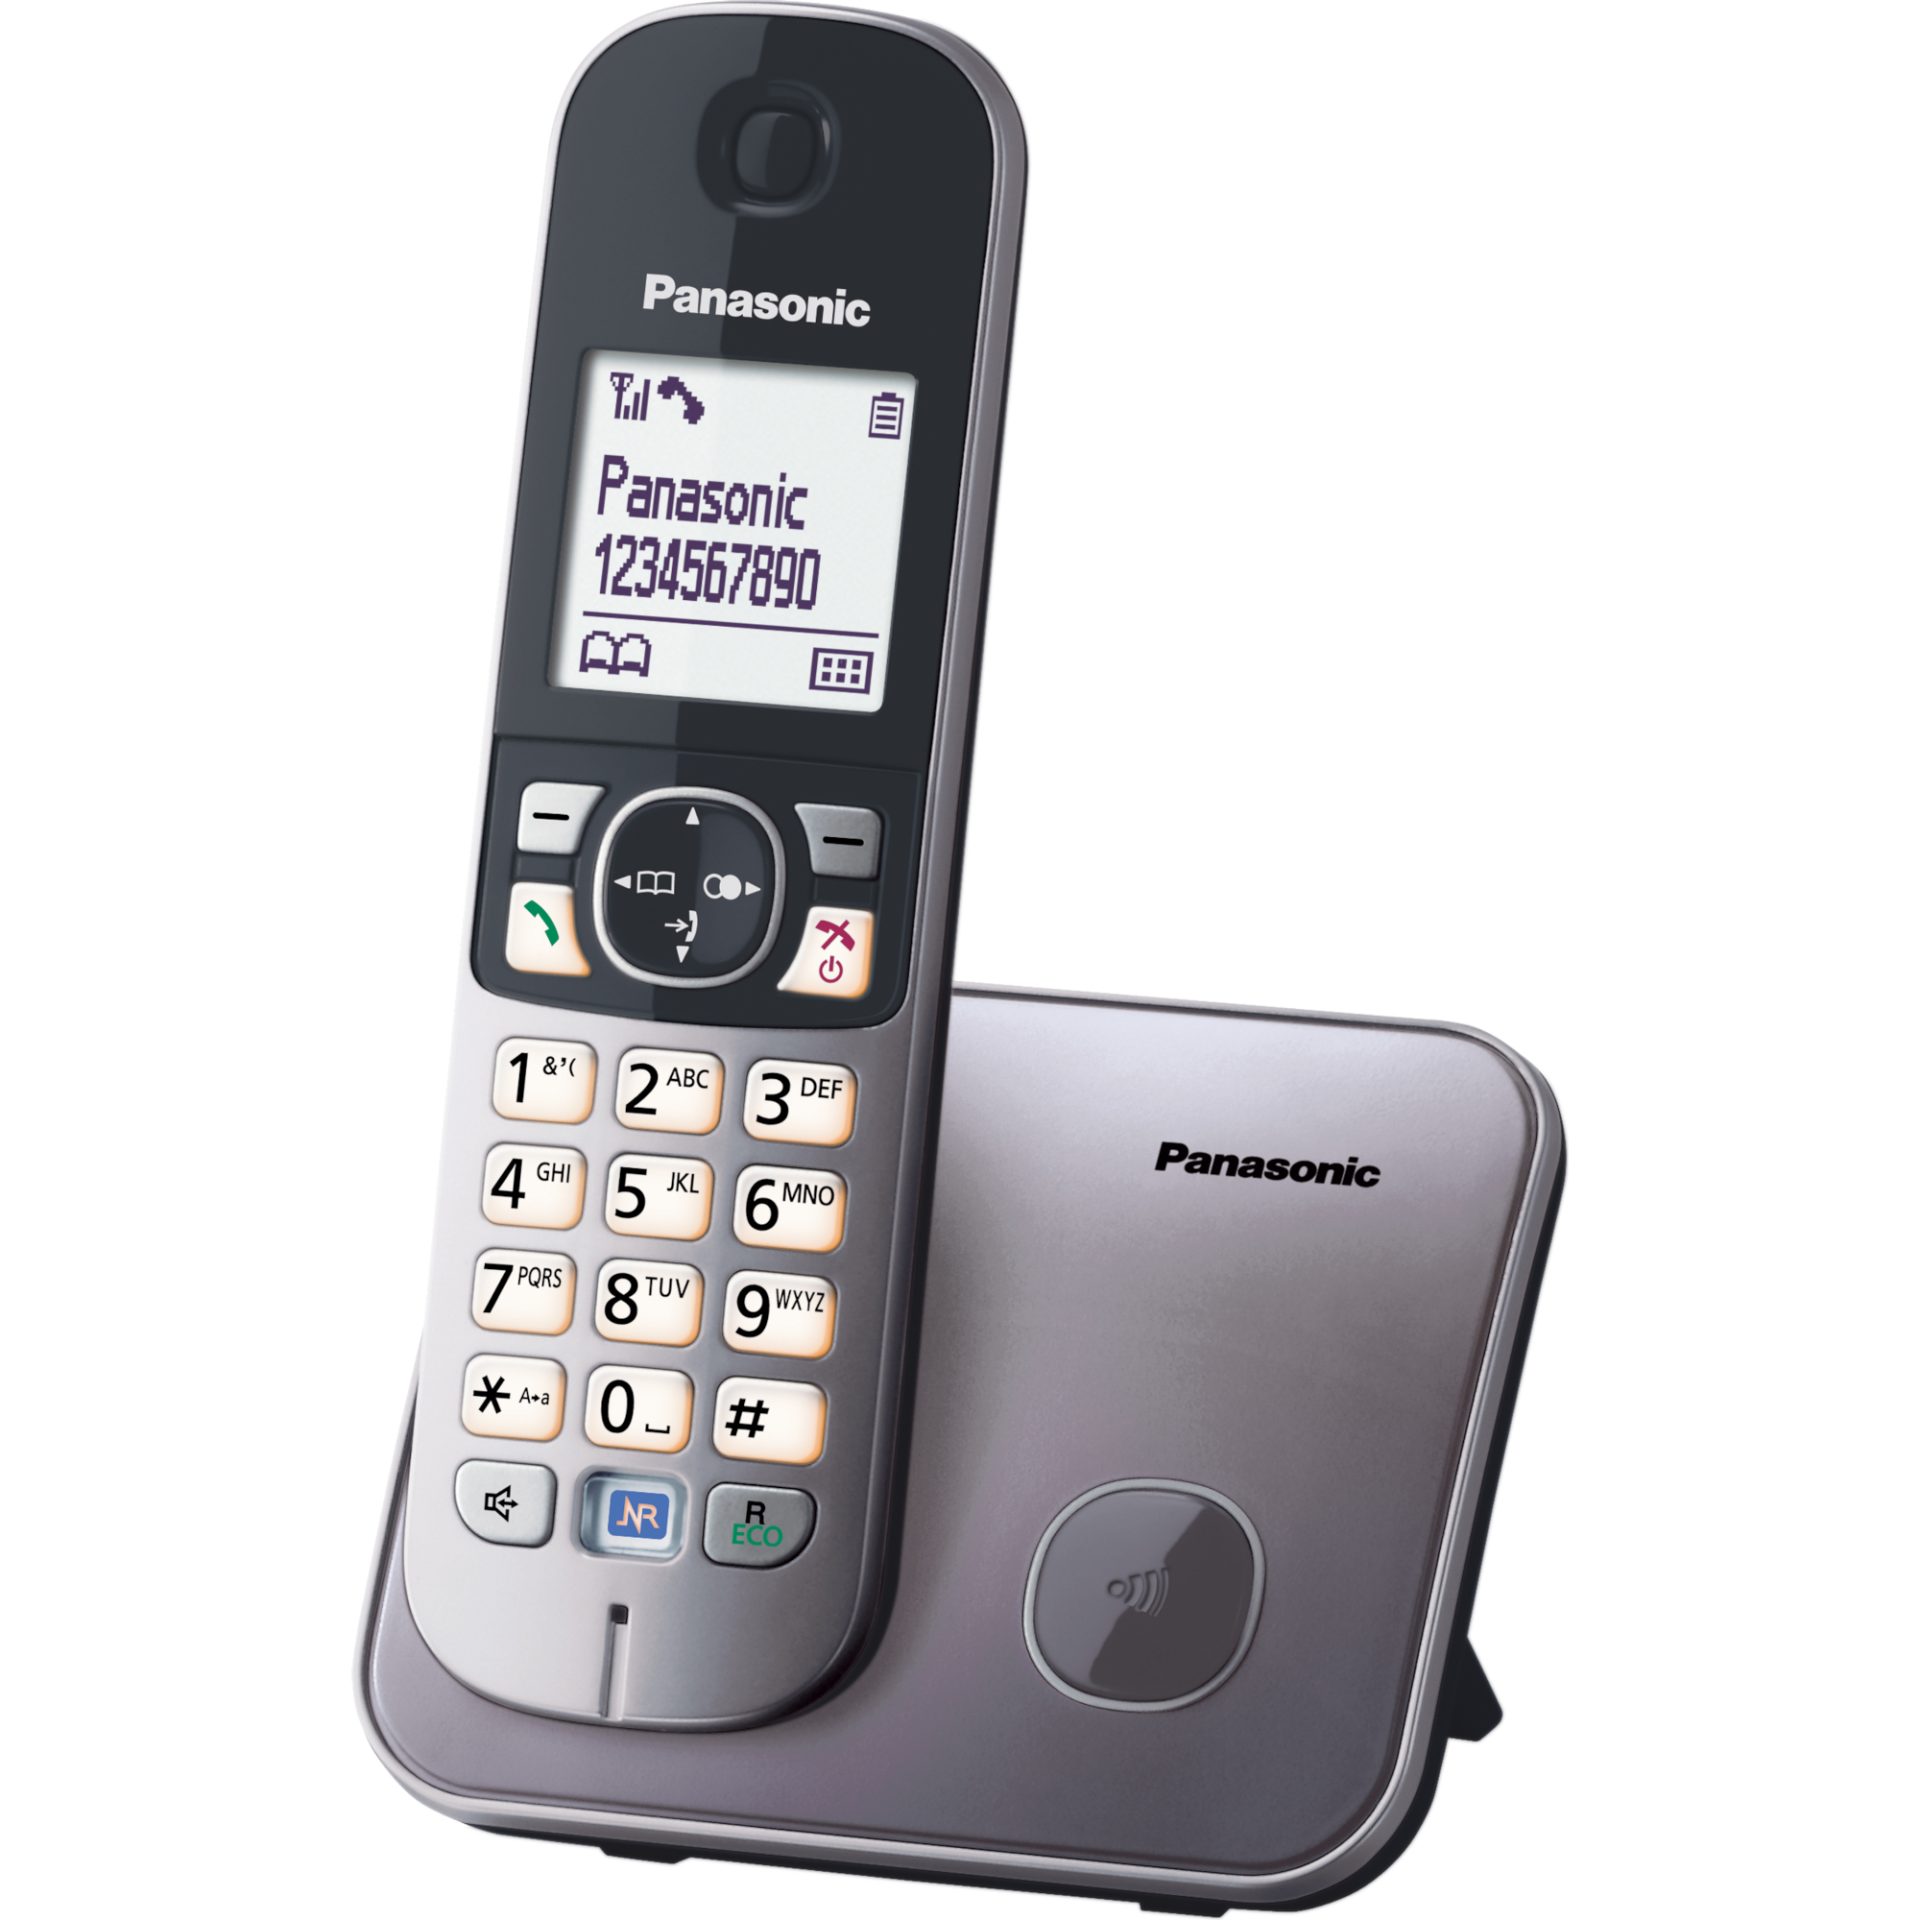 Panasonic KX-TG6811 digitální DECT telefon (redukce šumu, záložní baterie, telefonní seznam, filtrování hovorů), černá a šedá